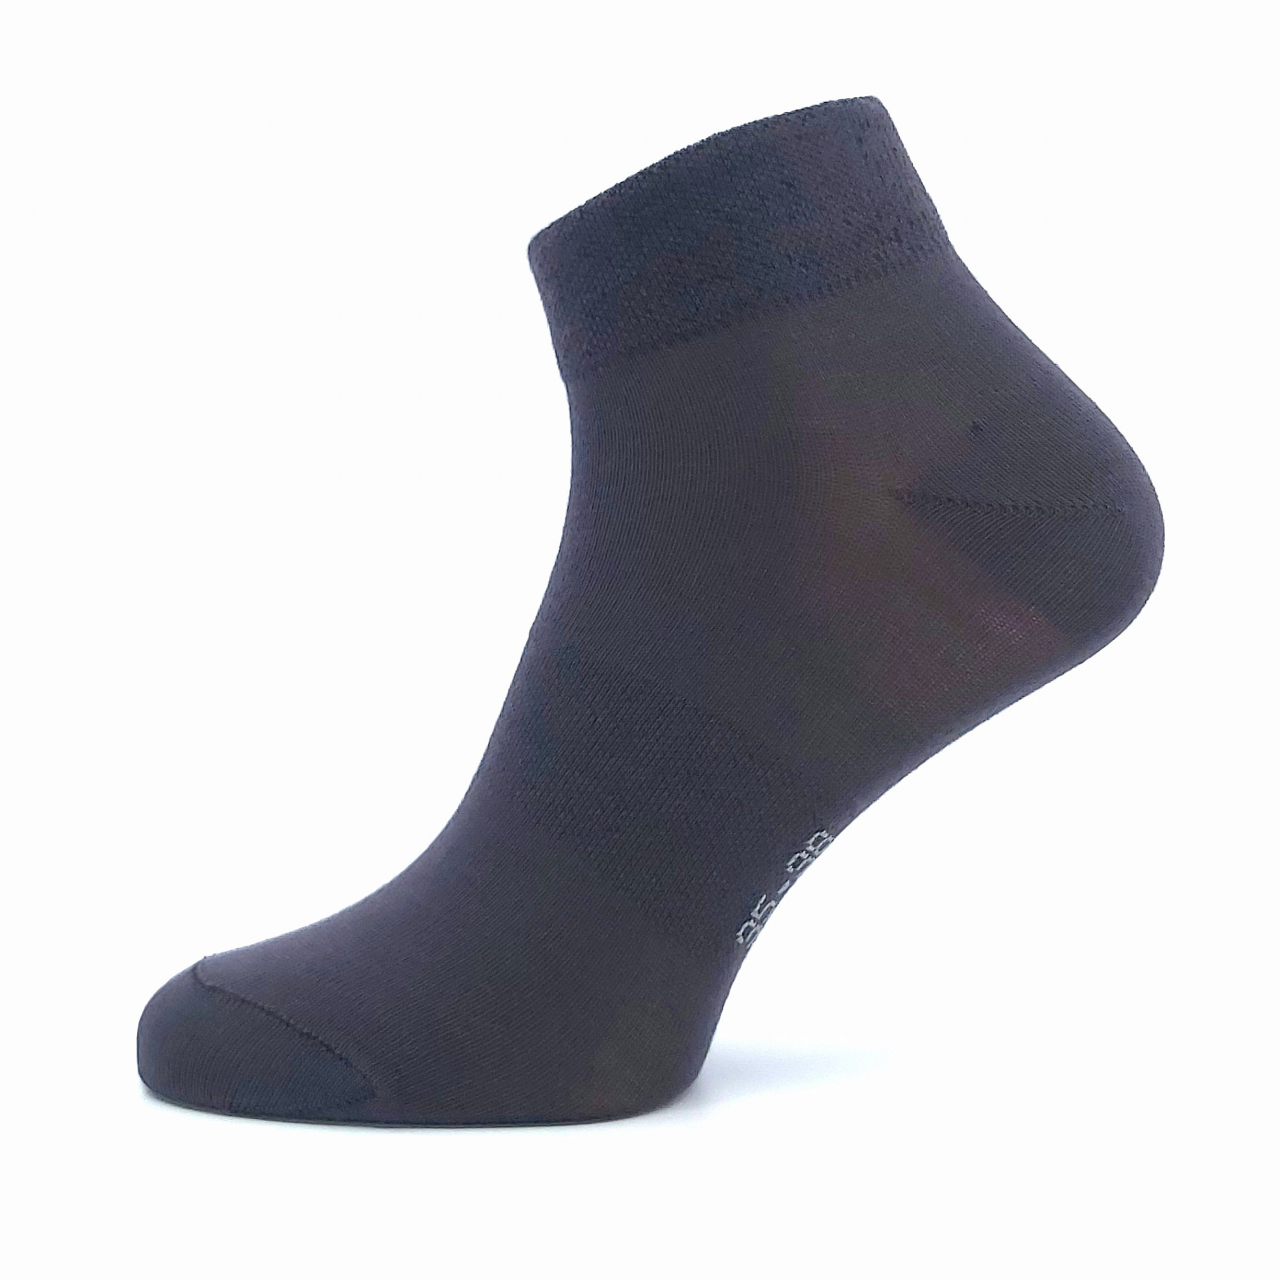 Ponožky unisex Lonka Raban - tmavě šedé, 35-38